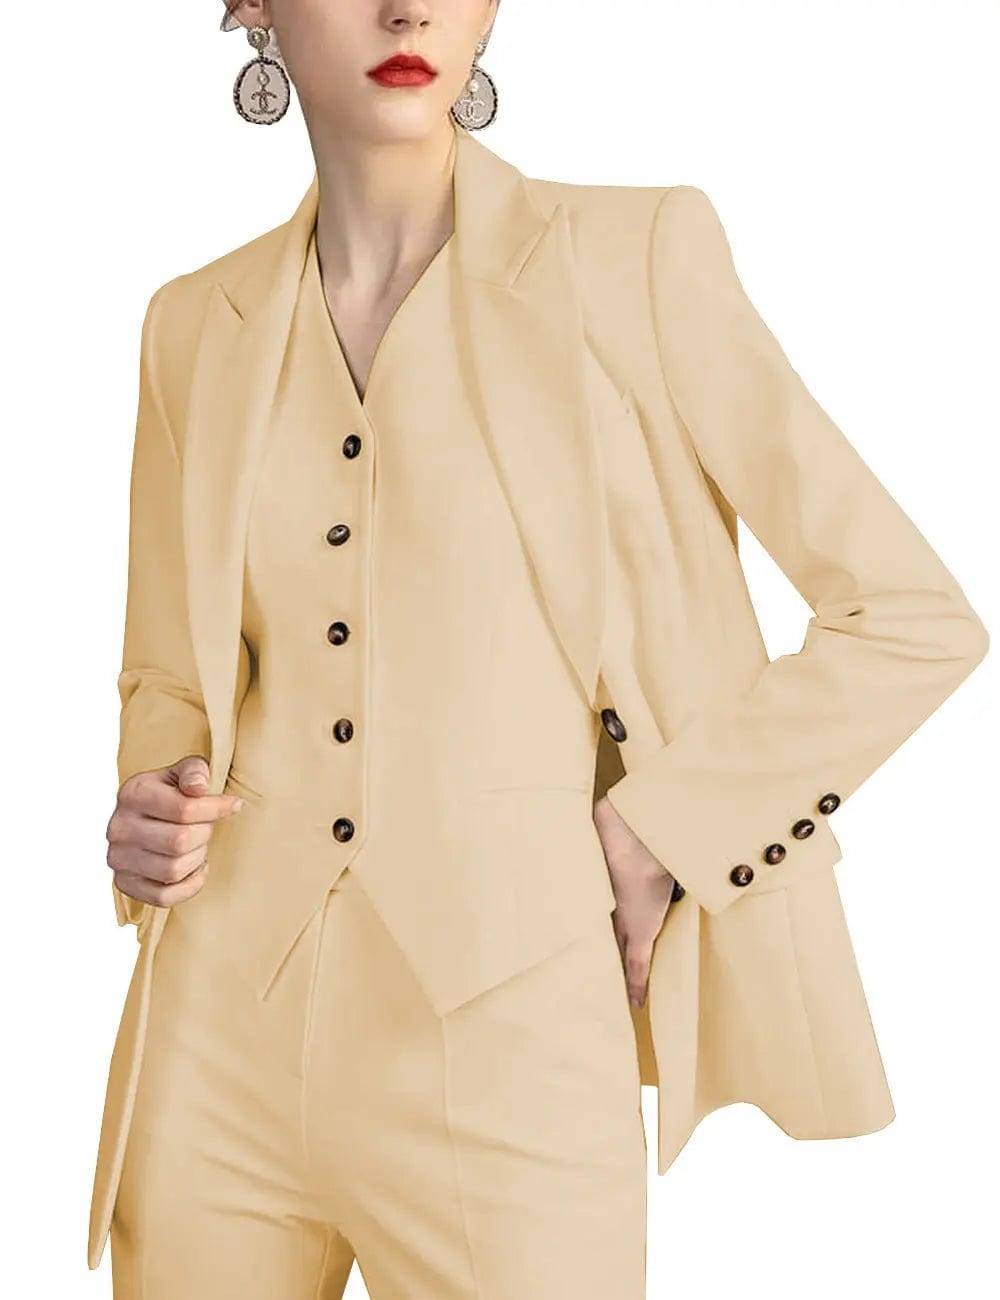 solovedress 3 Pieces Slim Fit Peak Lapel Suit (Blazer+vest+Pants)